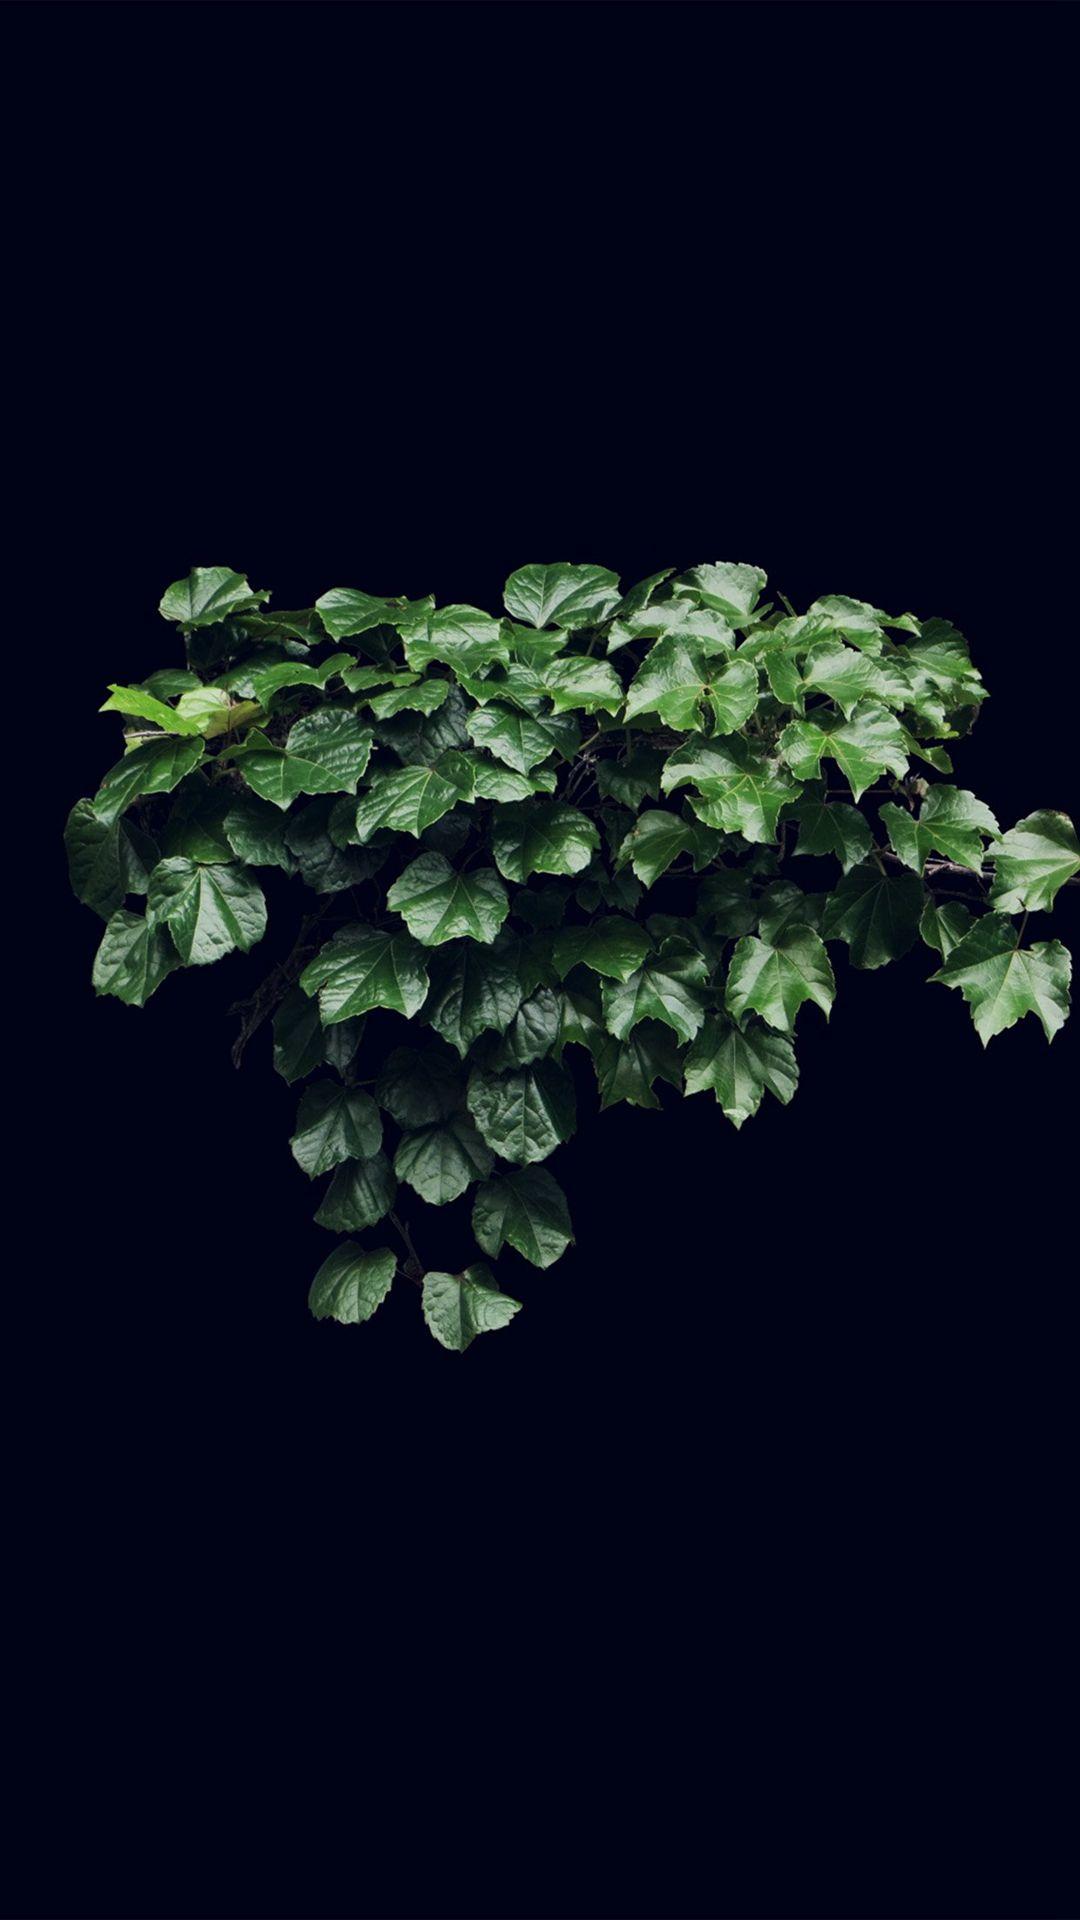 Truevine Dark Nature Green Flower Leaf iPhone 8 Wallpaper Free